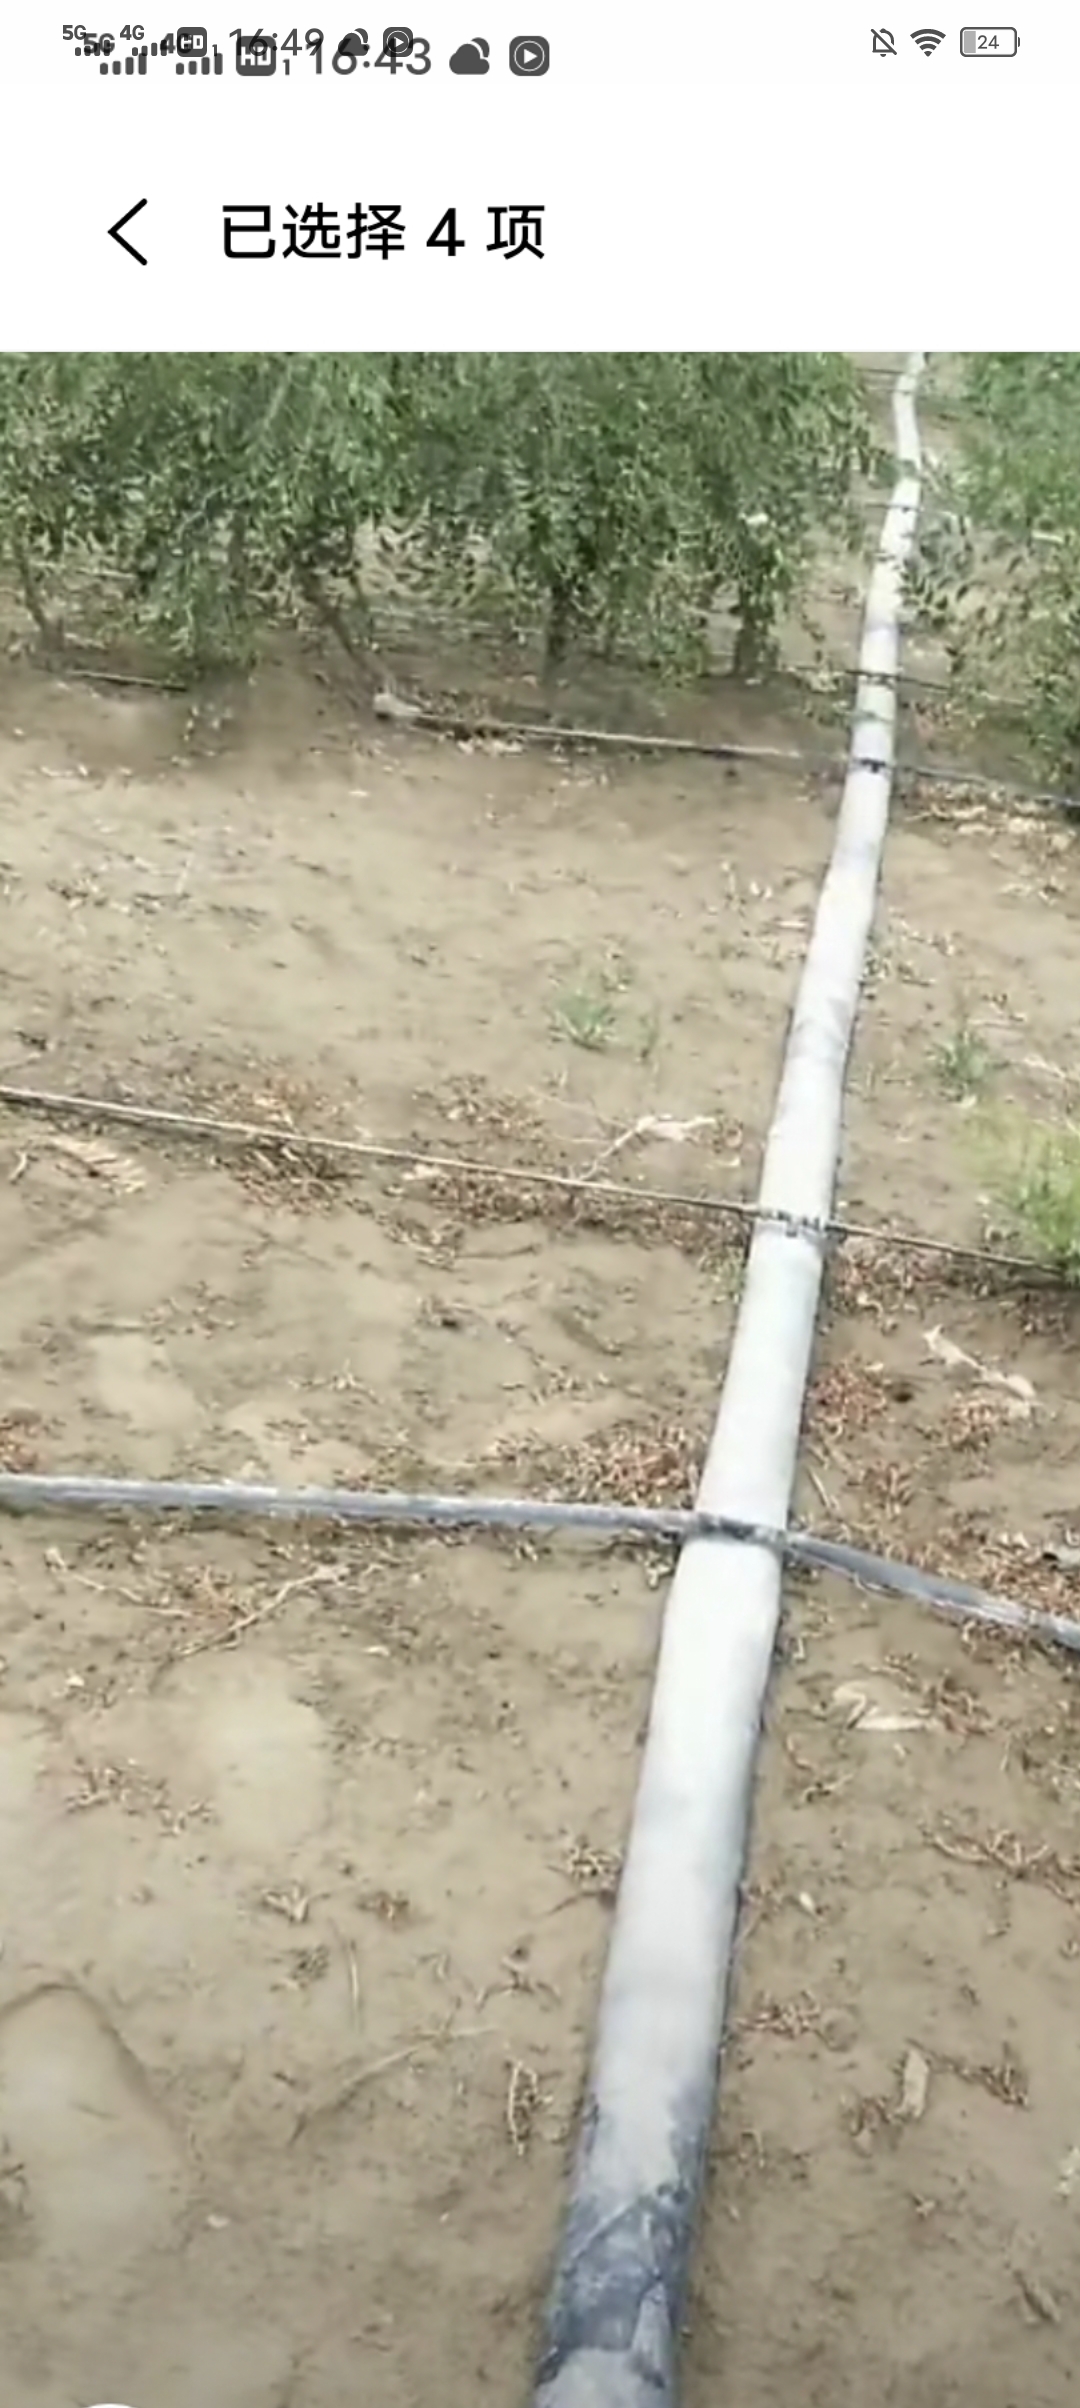 和田县旱地  水浇地 沙质地平整水电房齐全滴灌设施方便安全离乡镇二